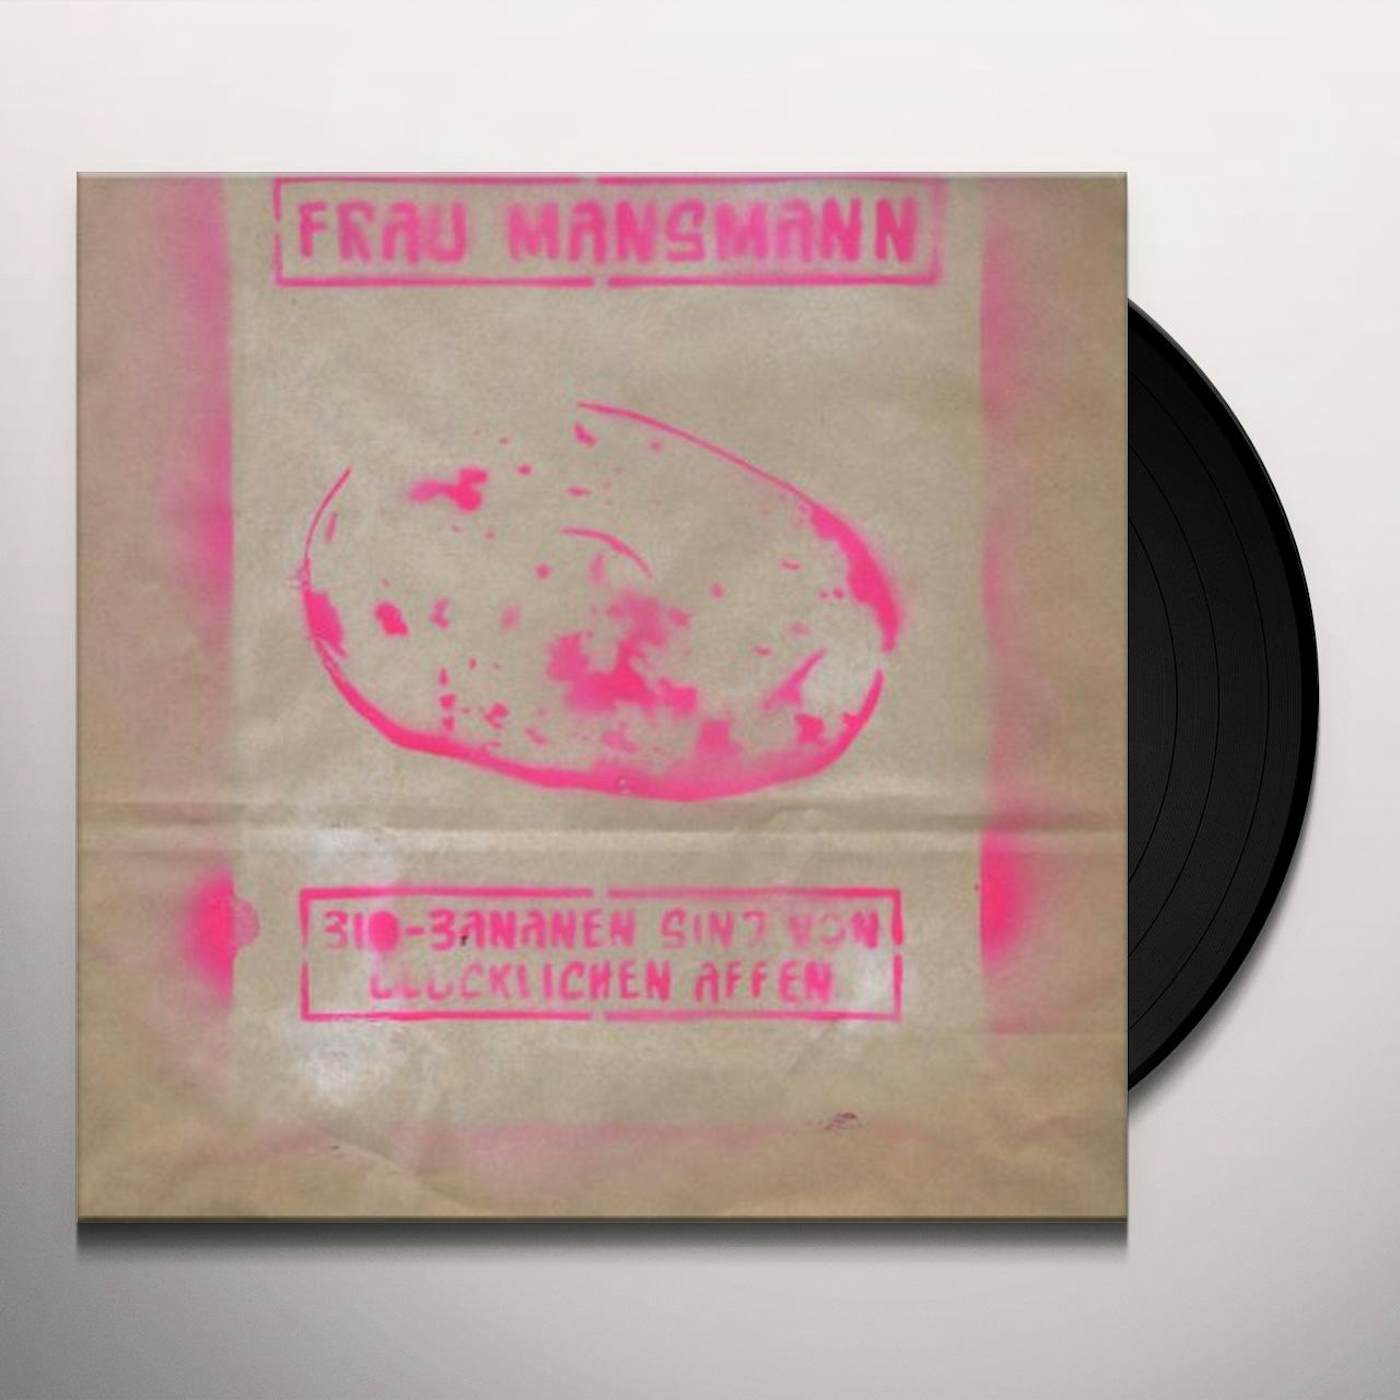 Frau Mansmann BIO-BANANEN SIND VON GLUCKLICHEN AFFEN Vinyl Record